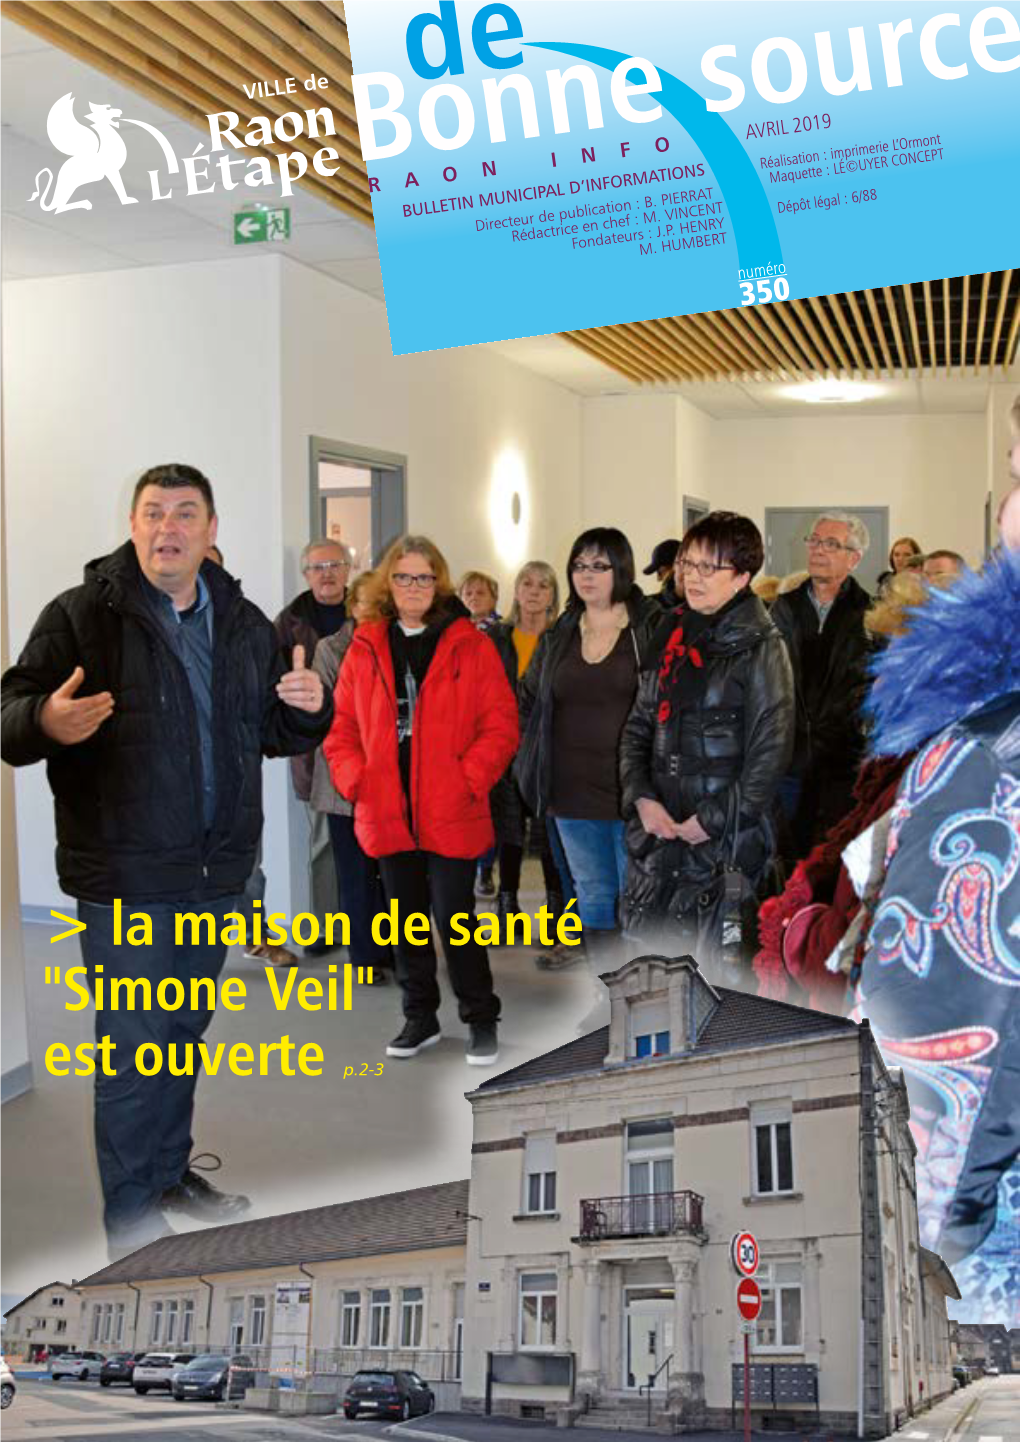 La Maison De Santé "Simone Veil" Est Ouverte P.2-3 Avril 2019 Événement N°350 > Sommaire > Visite De La Maison De